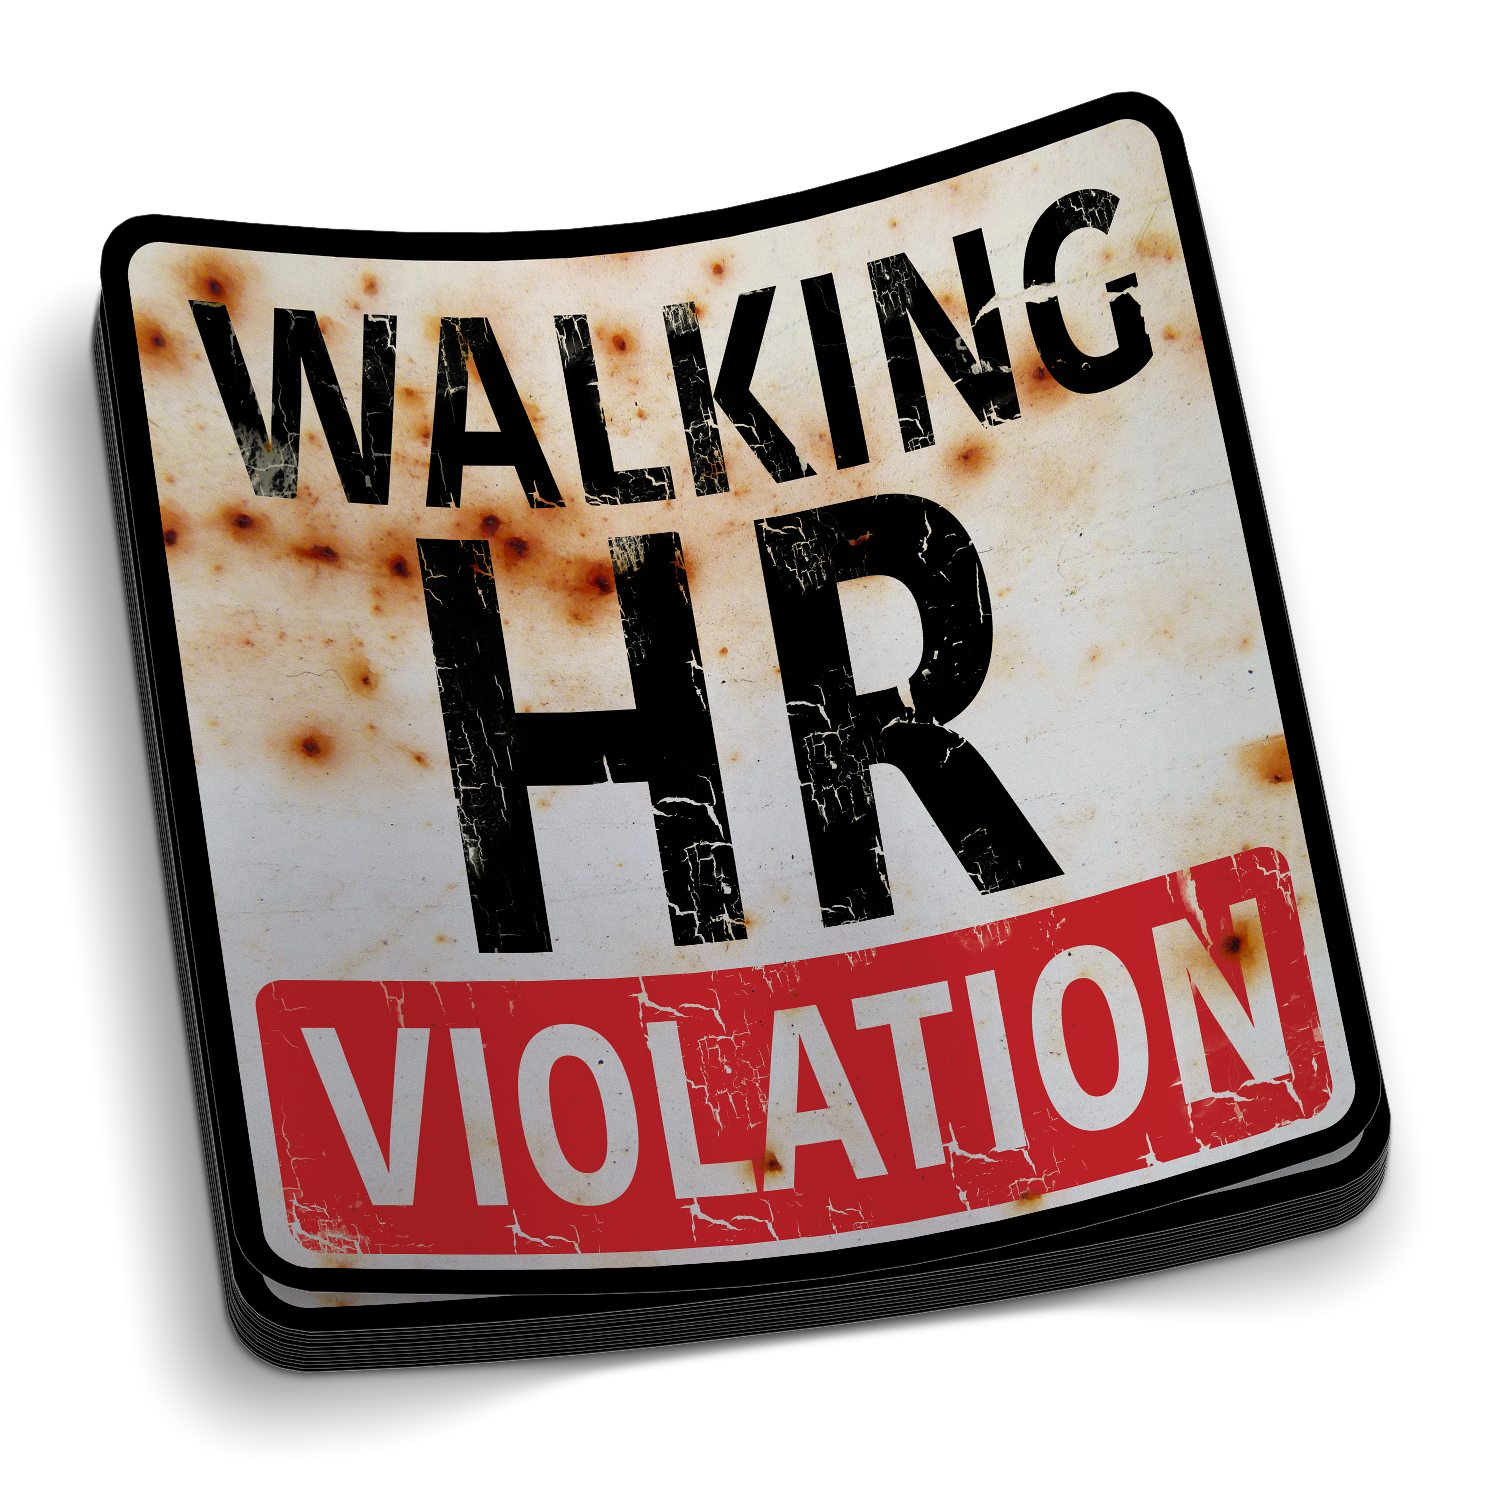 Walking HR Violation Decal